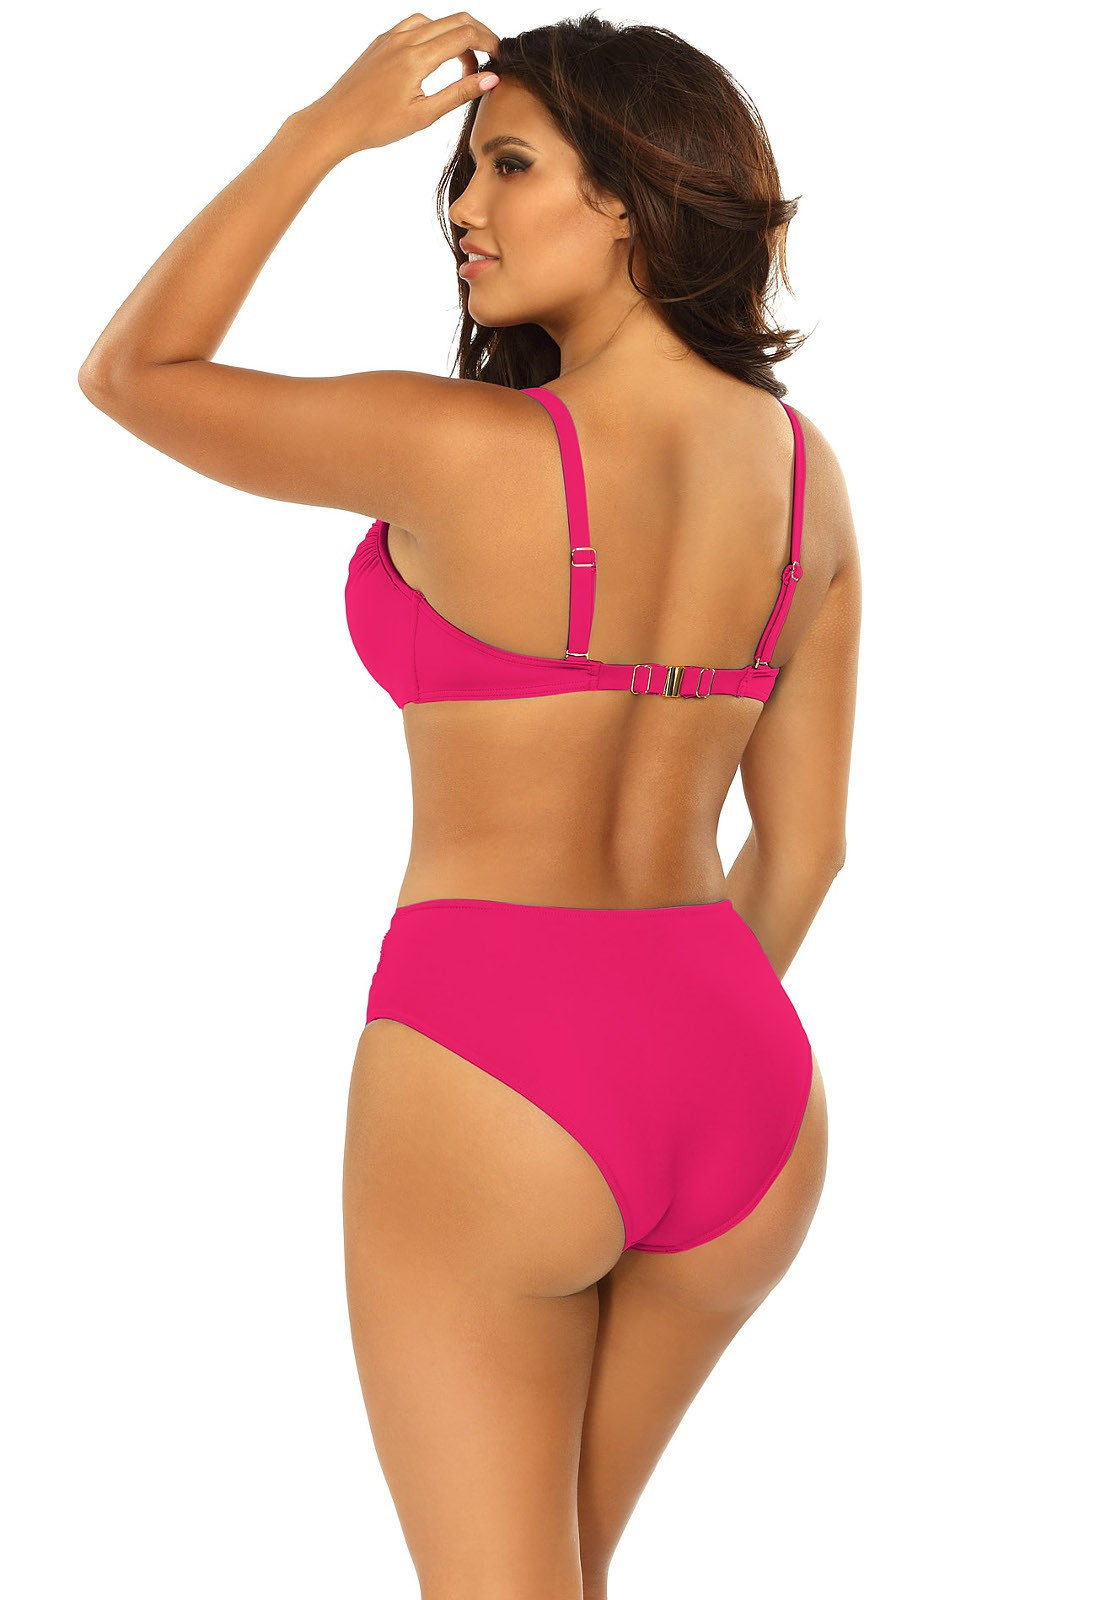 Dámské dvoudílné plavky Fashion 27 S940SV1-2d tm.růžové- Self 38D